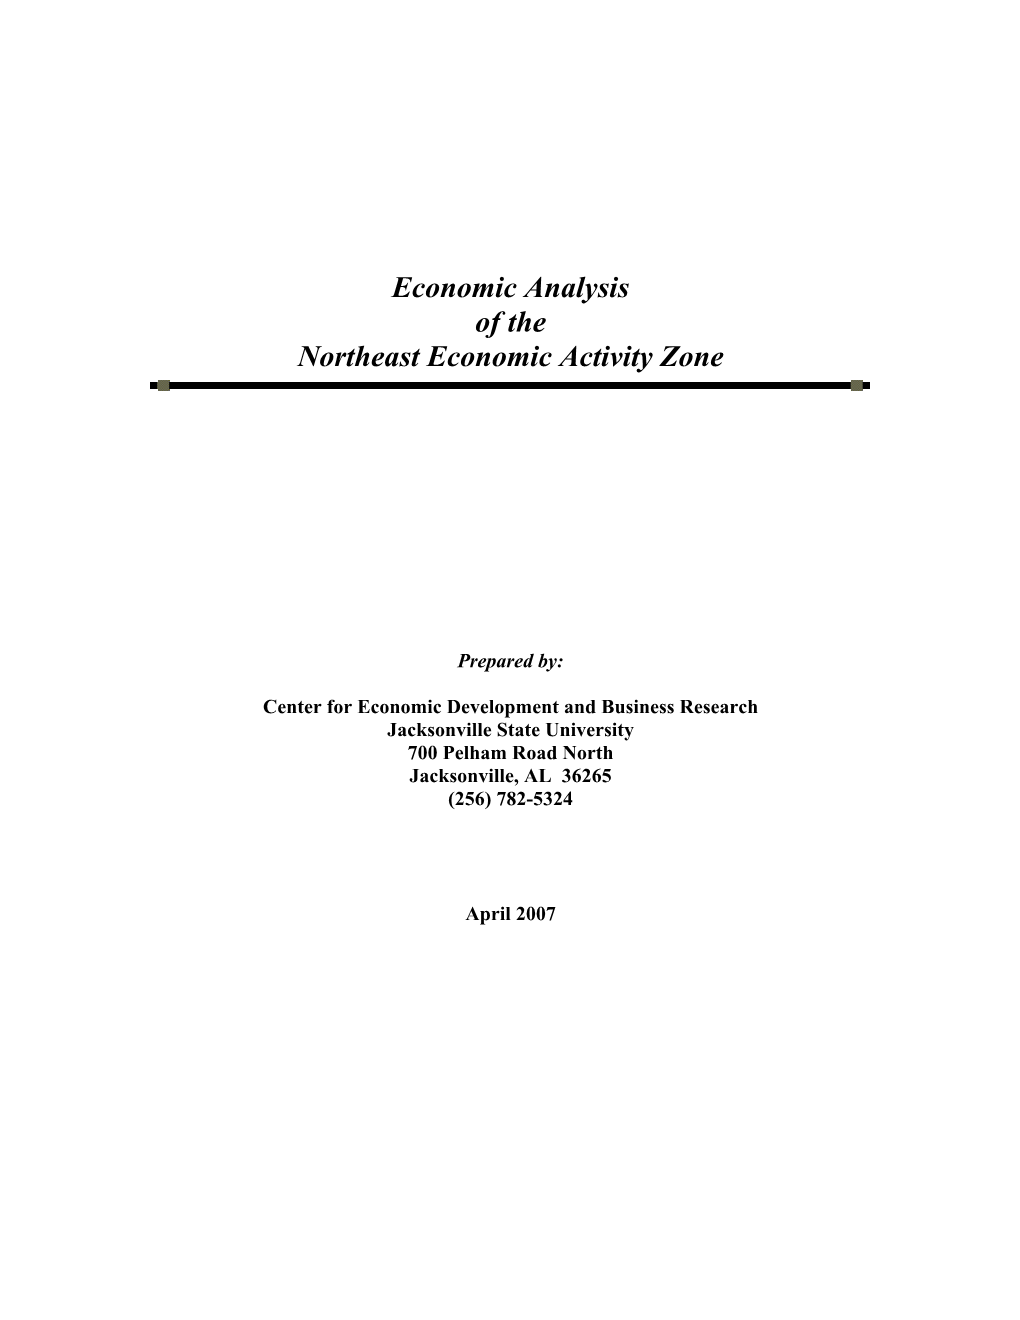 Economic Analysis of the Northeast Economic Activity Zone